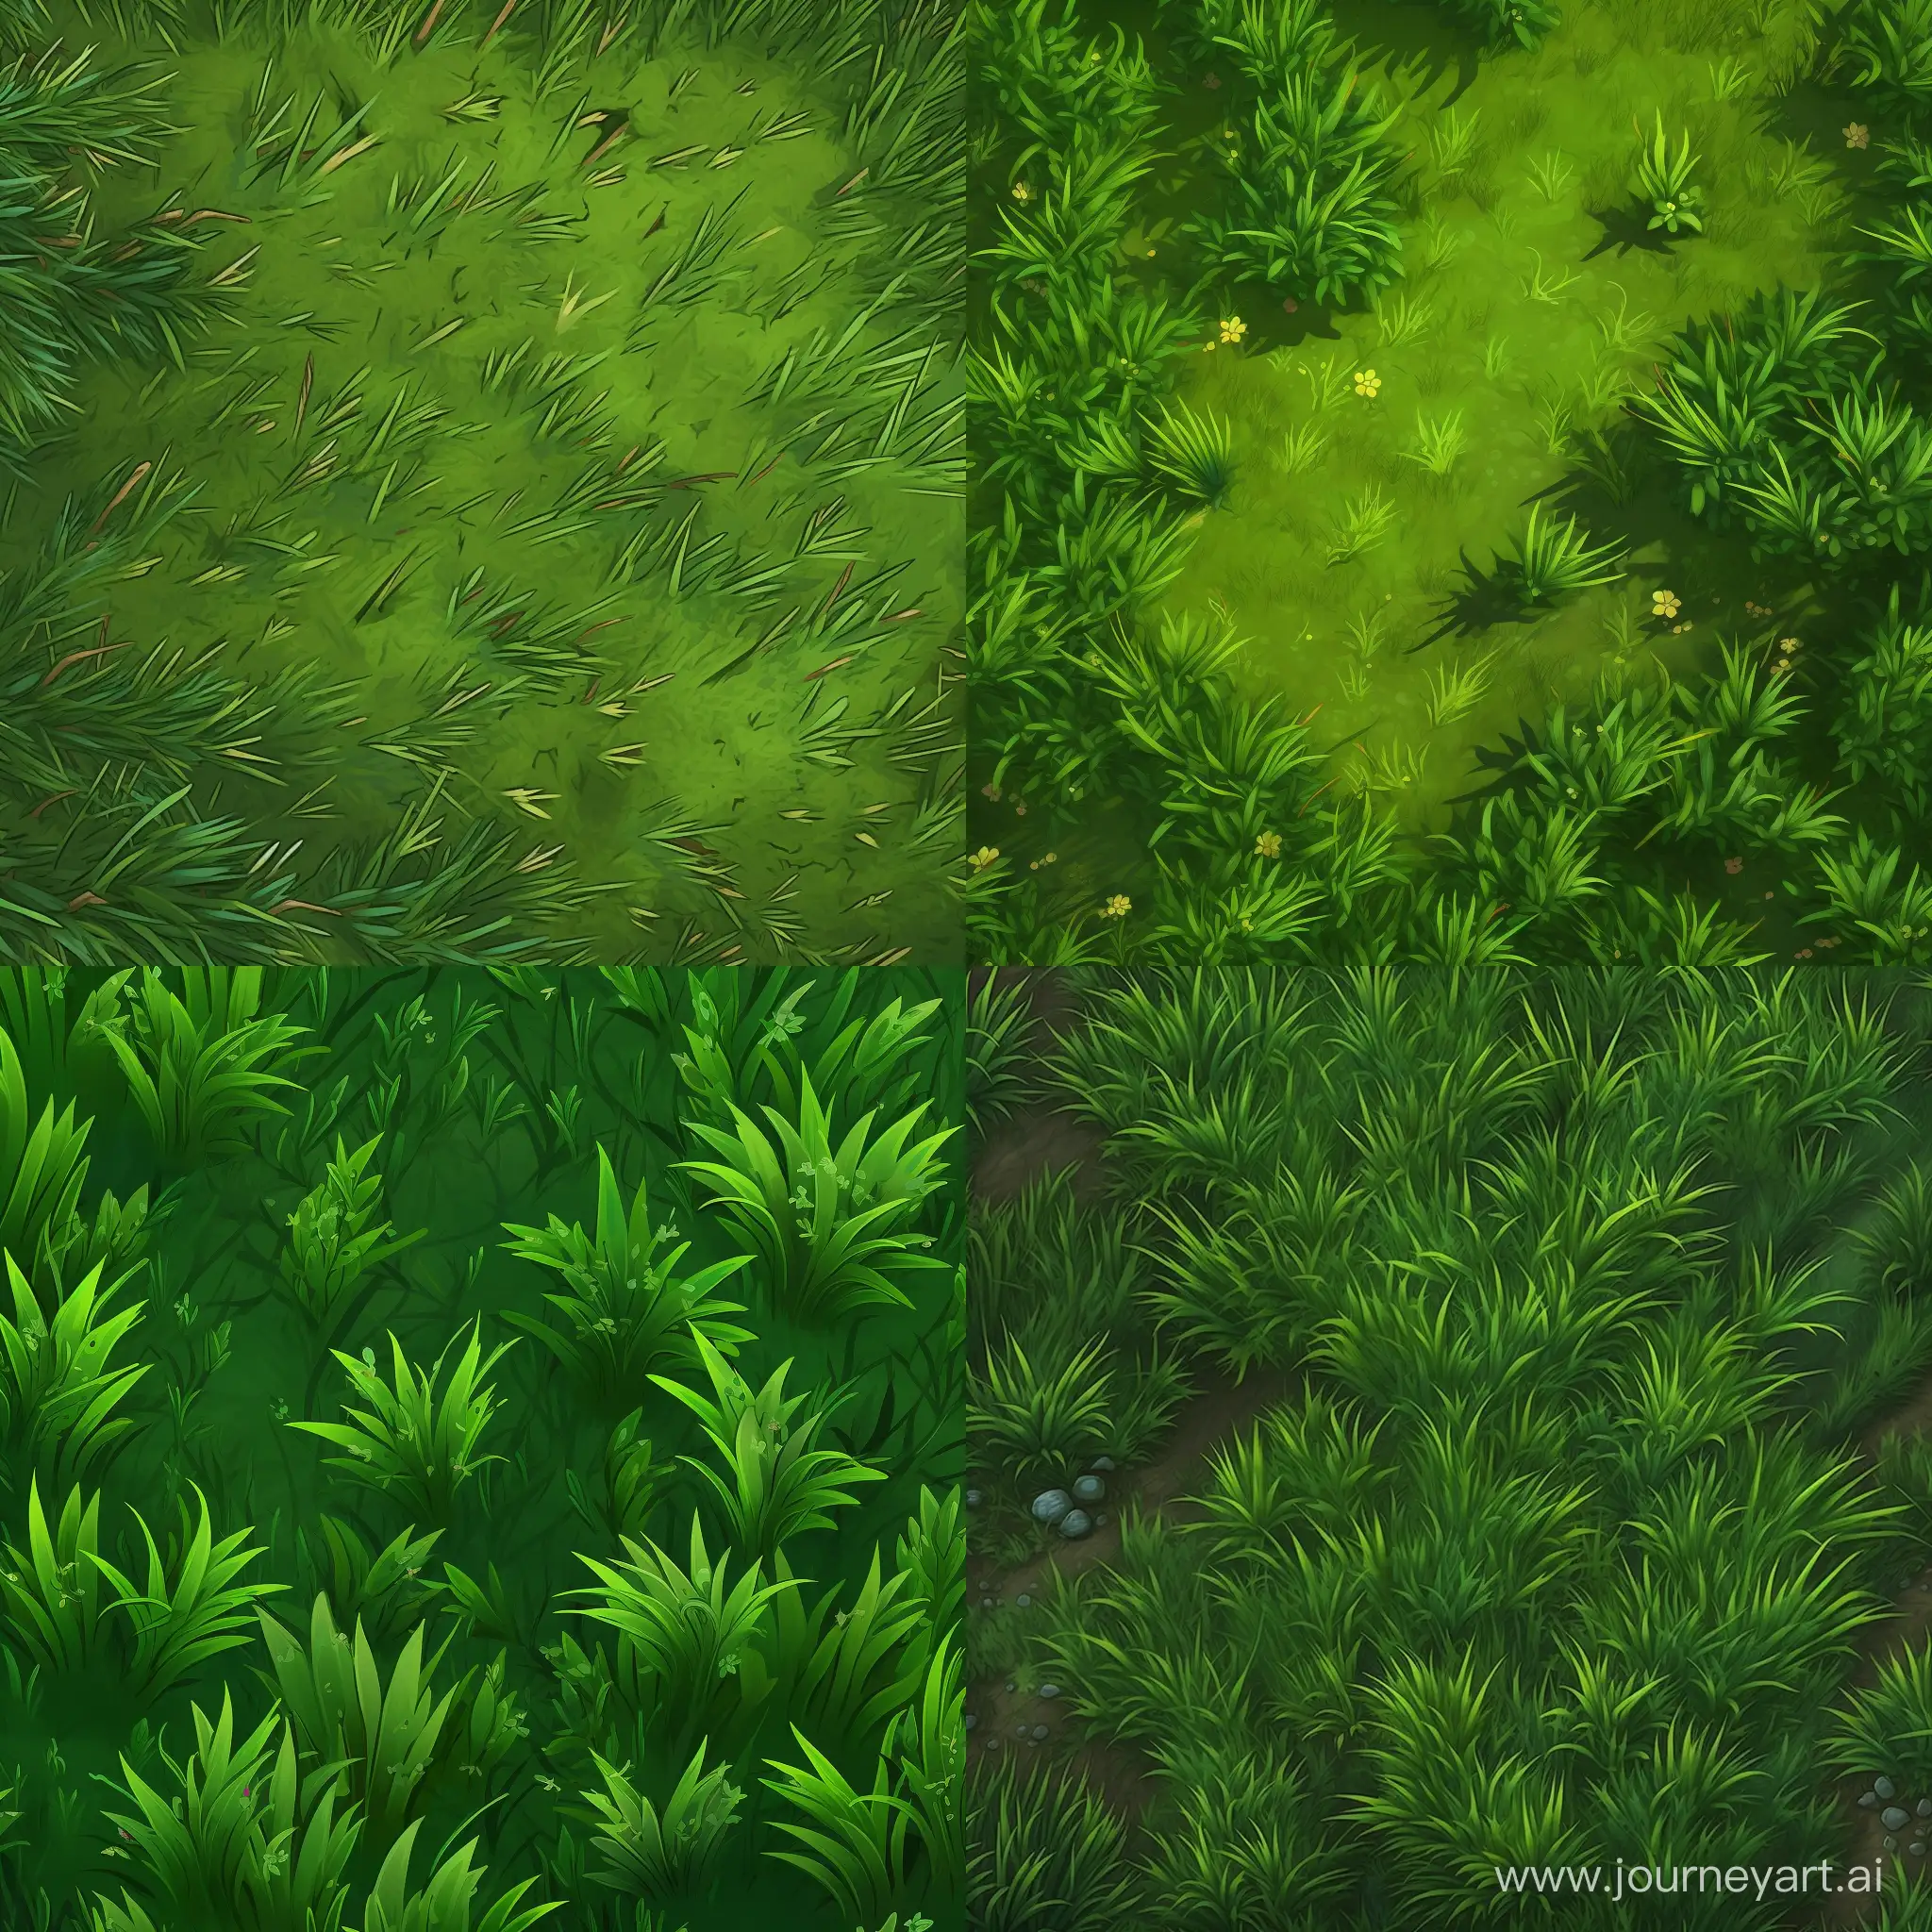 game art green grass texture 1080 x 1080 cartoon topdown 